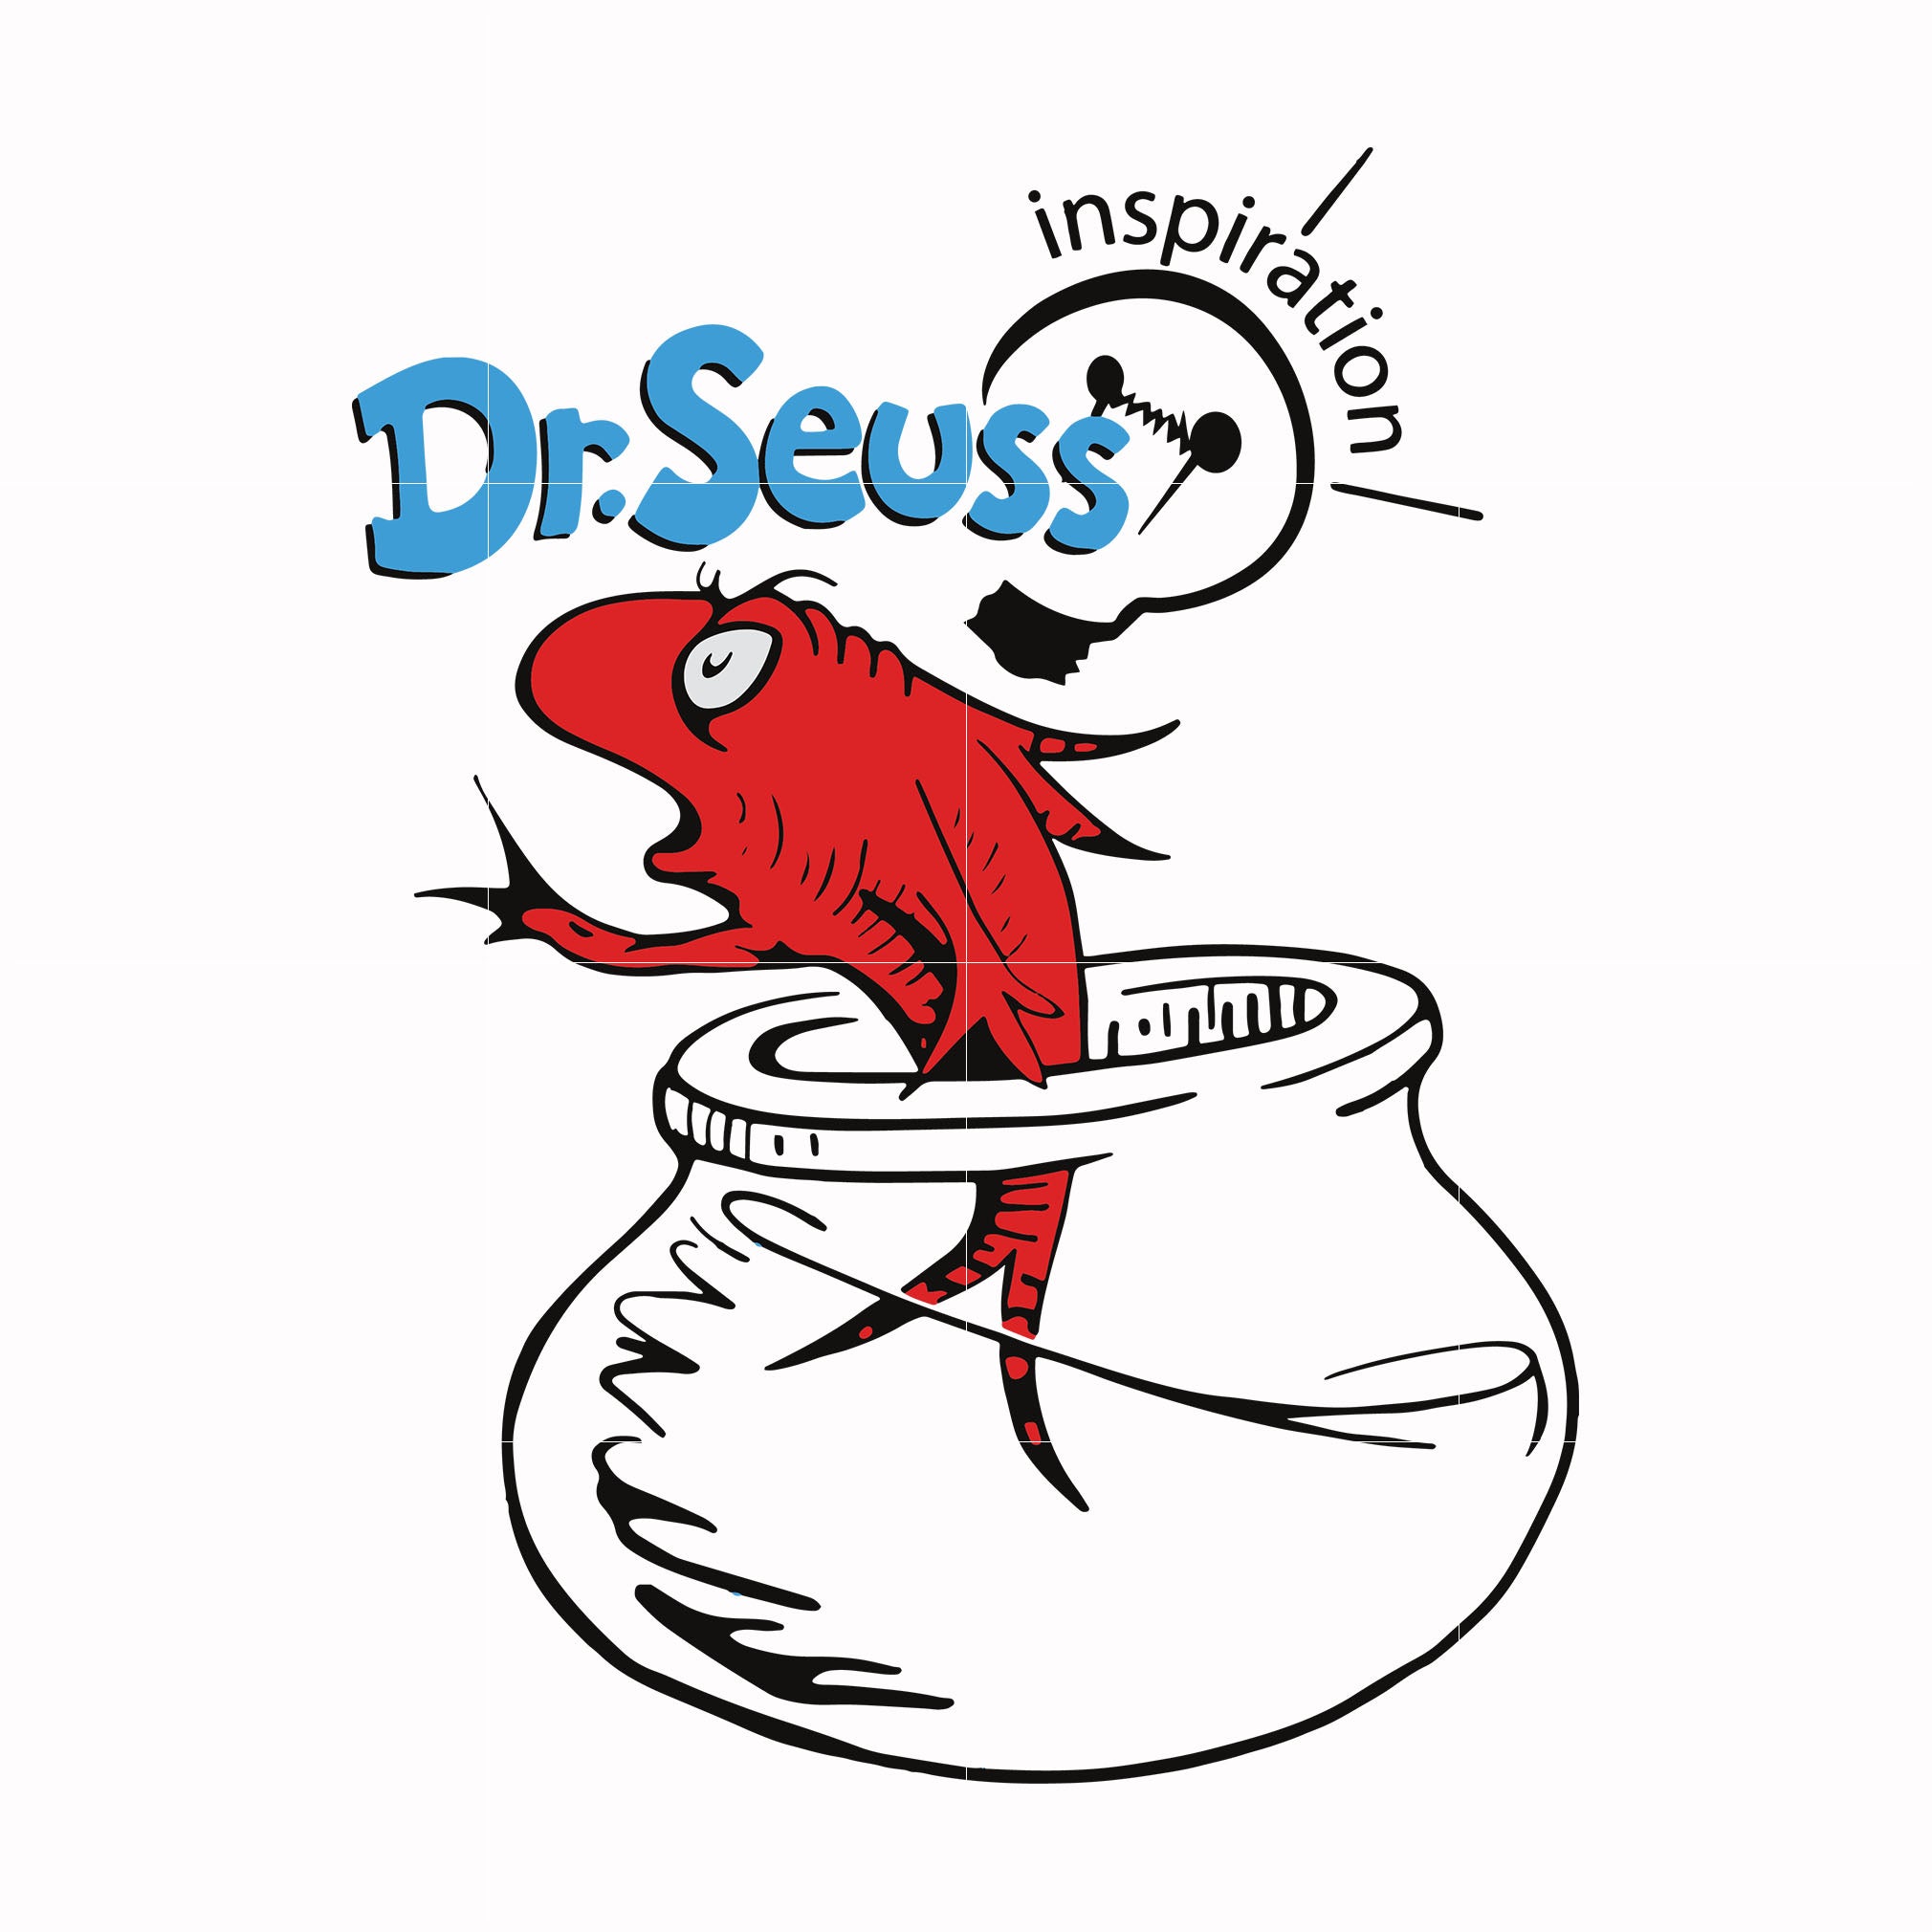 Dr.Seuss Inspiration svg, png, dxf, eps file